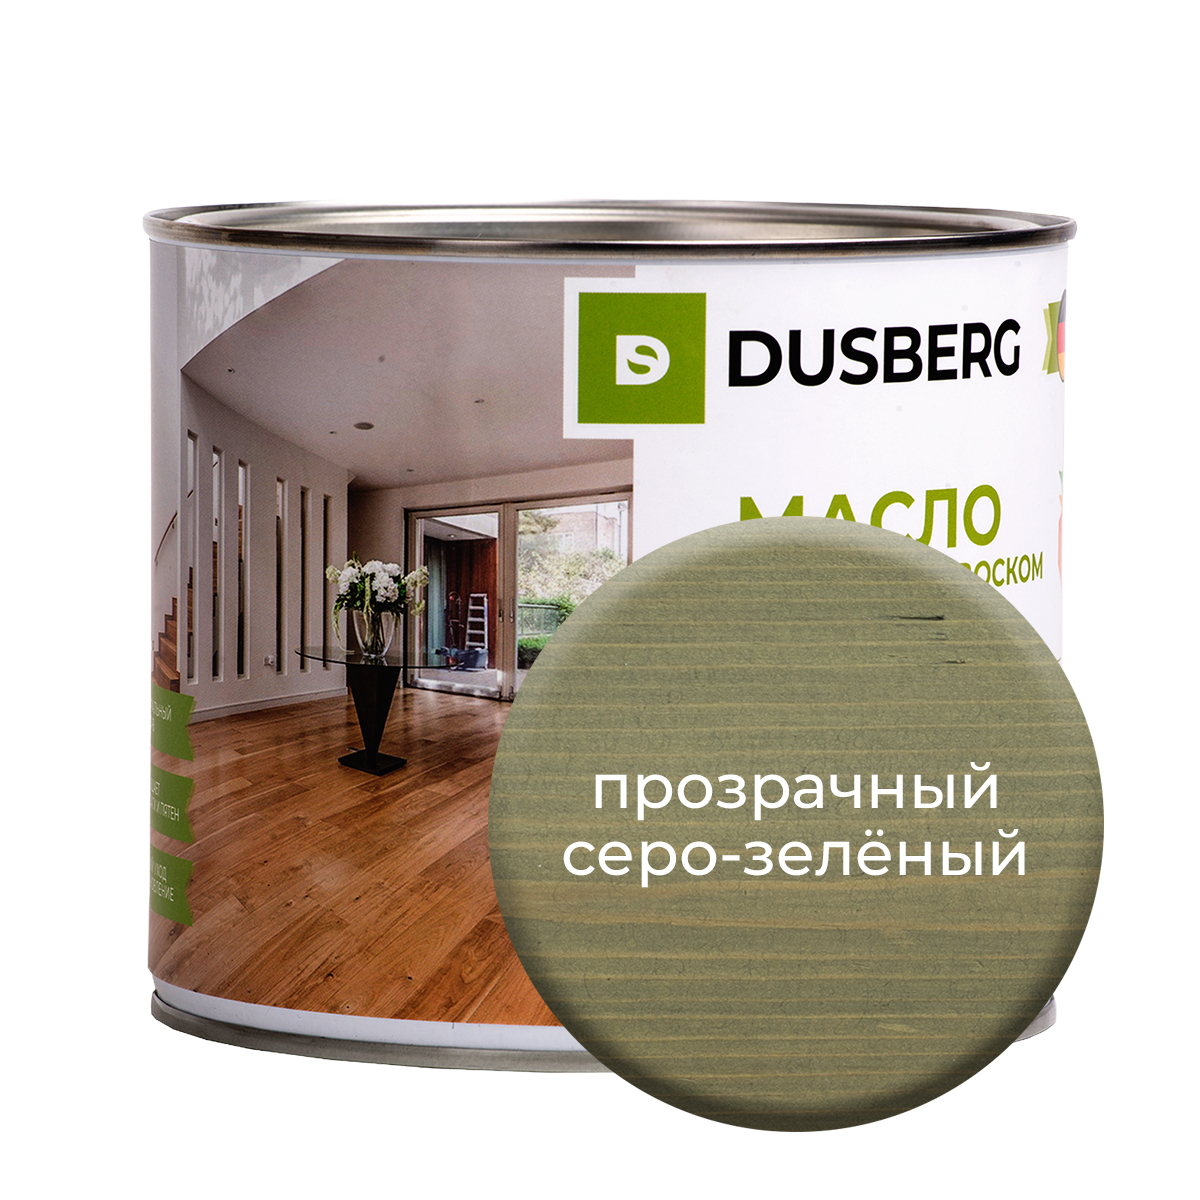 Масло Dusberg с твердым воском на бесцветной основе, 2 л Прозрачный серо-зеленый масло воск для террасной доски brite flexx бес ное банка 0 75 л 212475